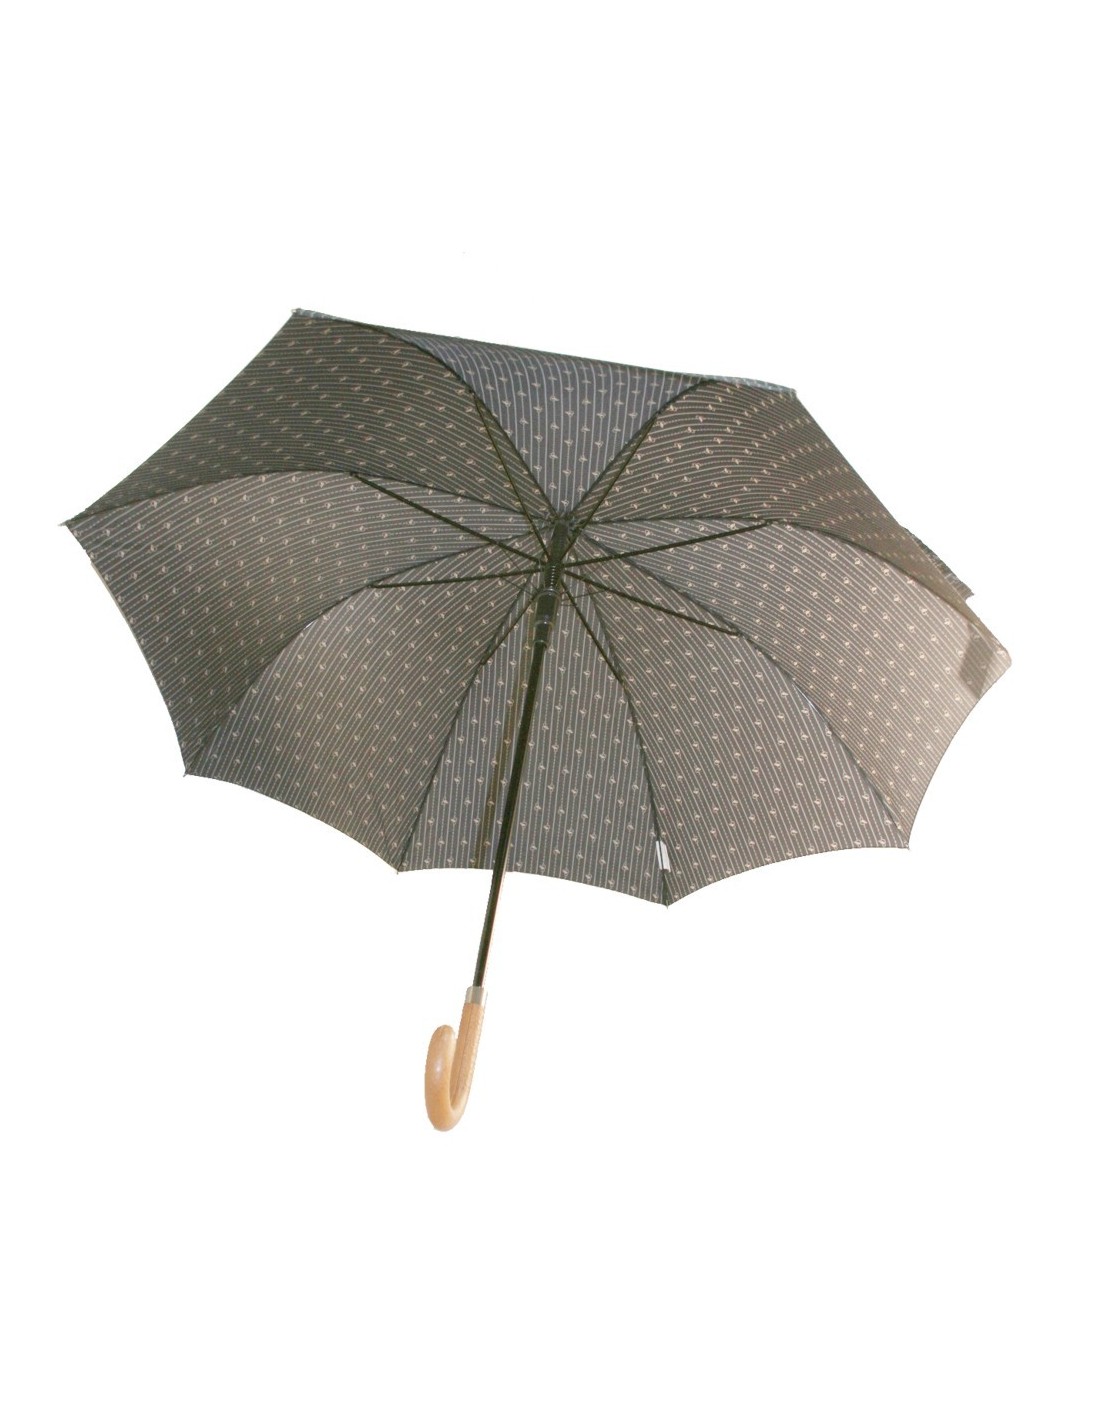 Parapluie auto-ouvrant imprimé marron pour gentleman grand parapluie avec tiges en fibre cadeau de fête des pères